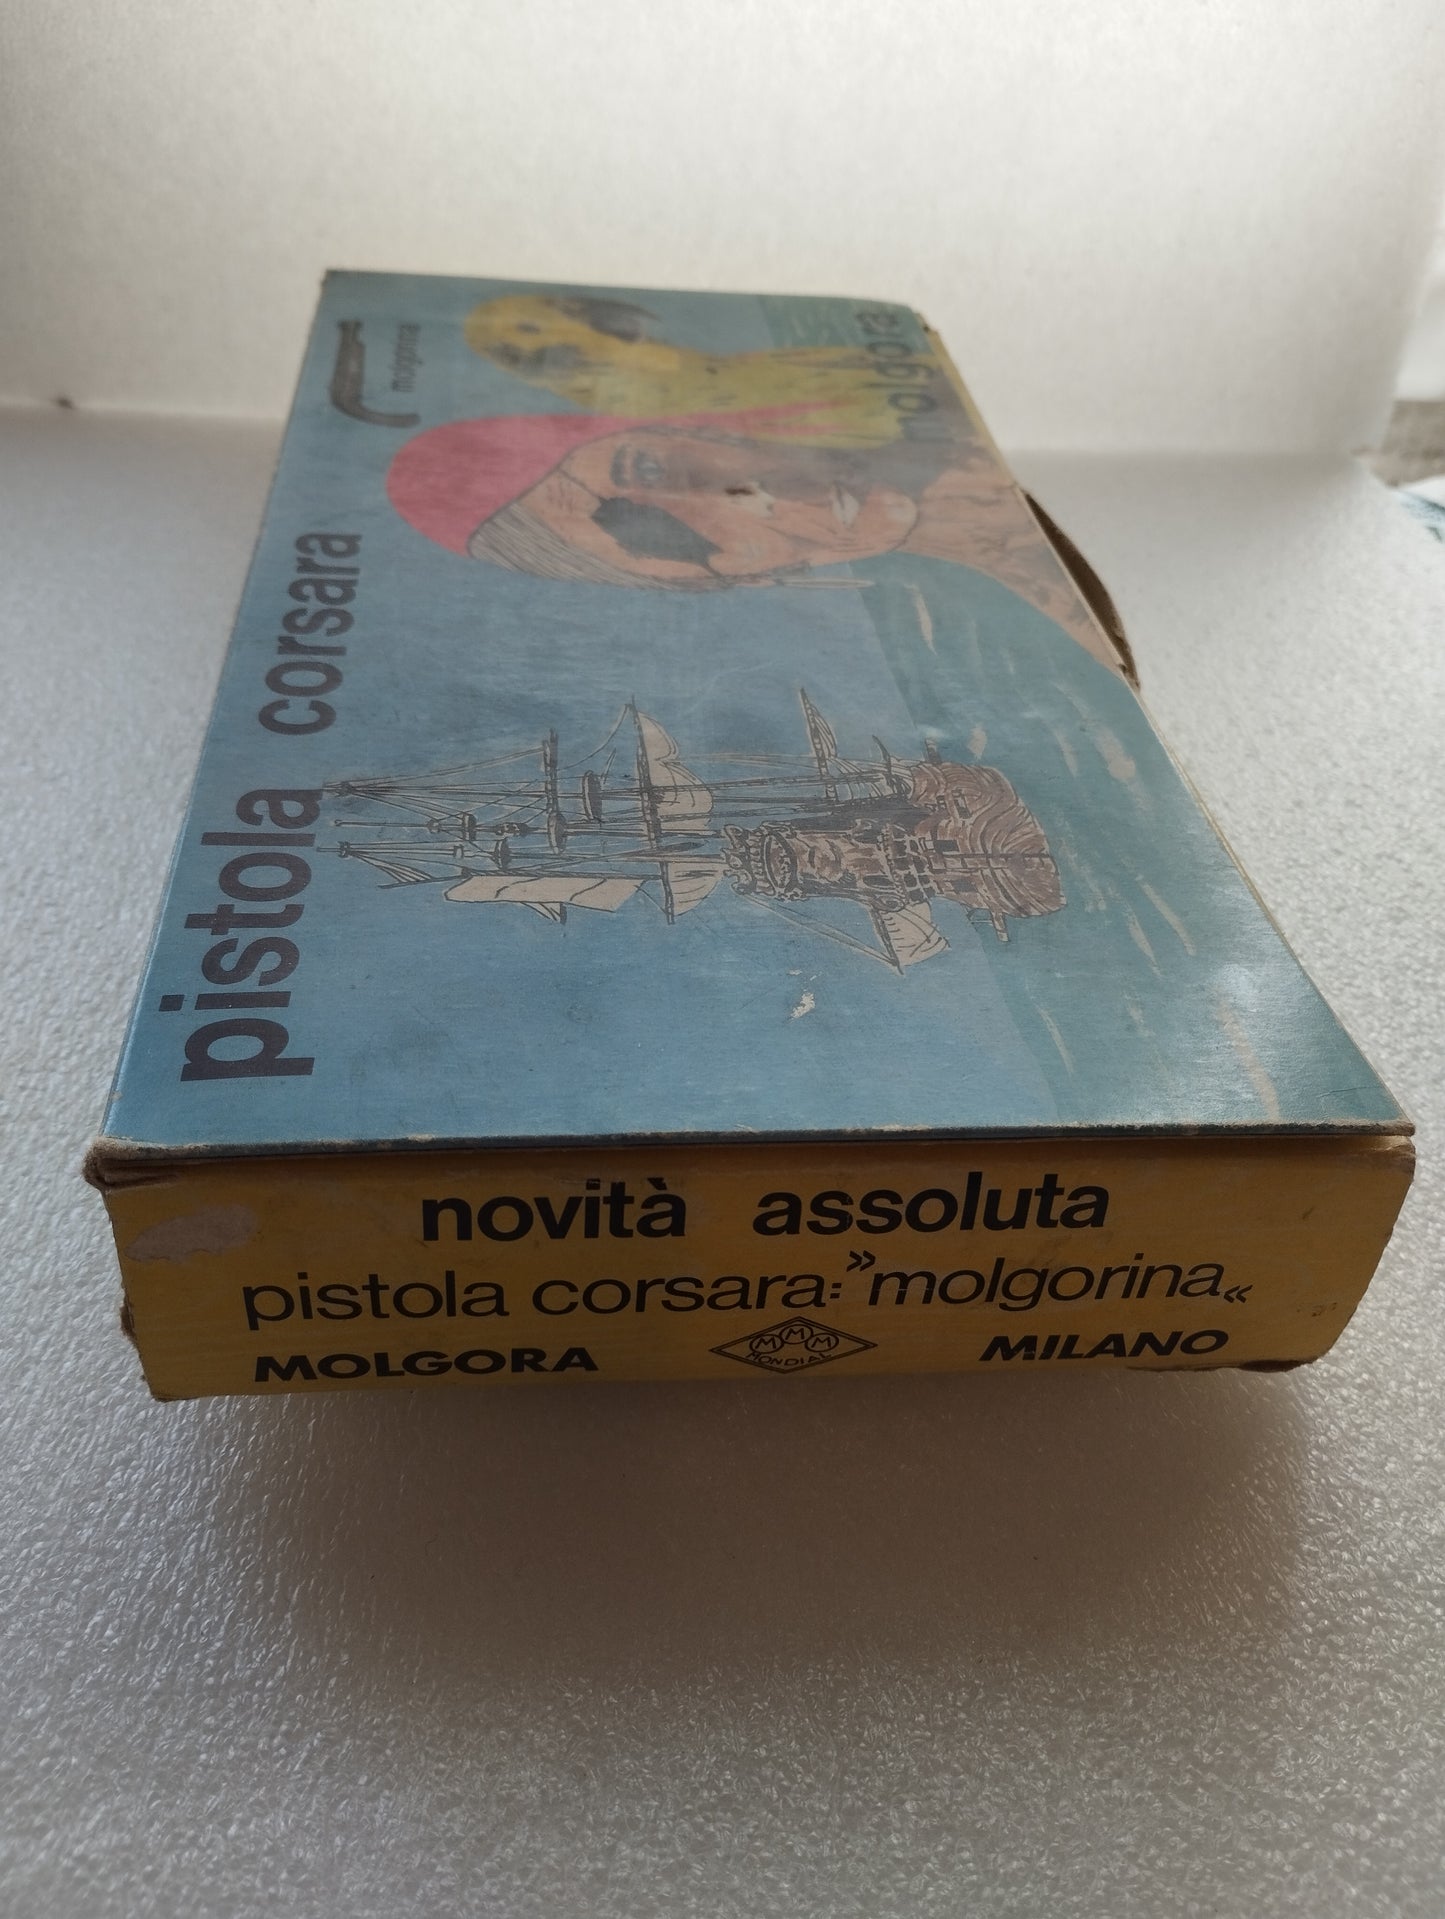 Gioco Molgorina Pistola Corsara

Prodotto da Mondial Milano

Made in Italy

Anni 70